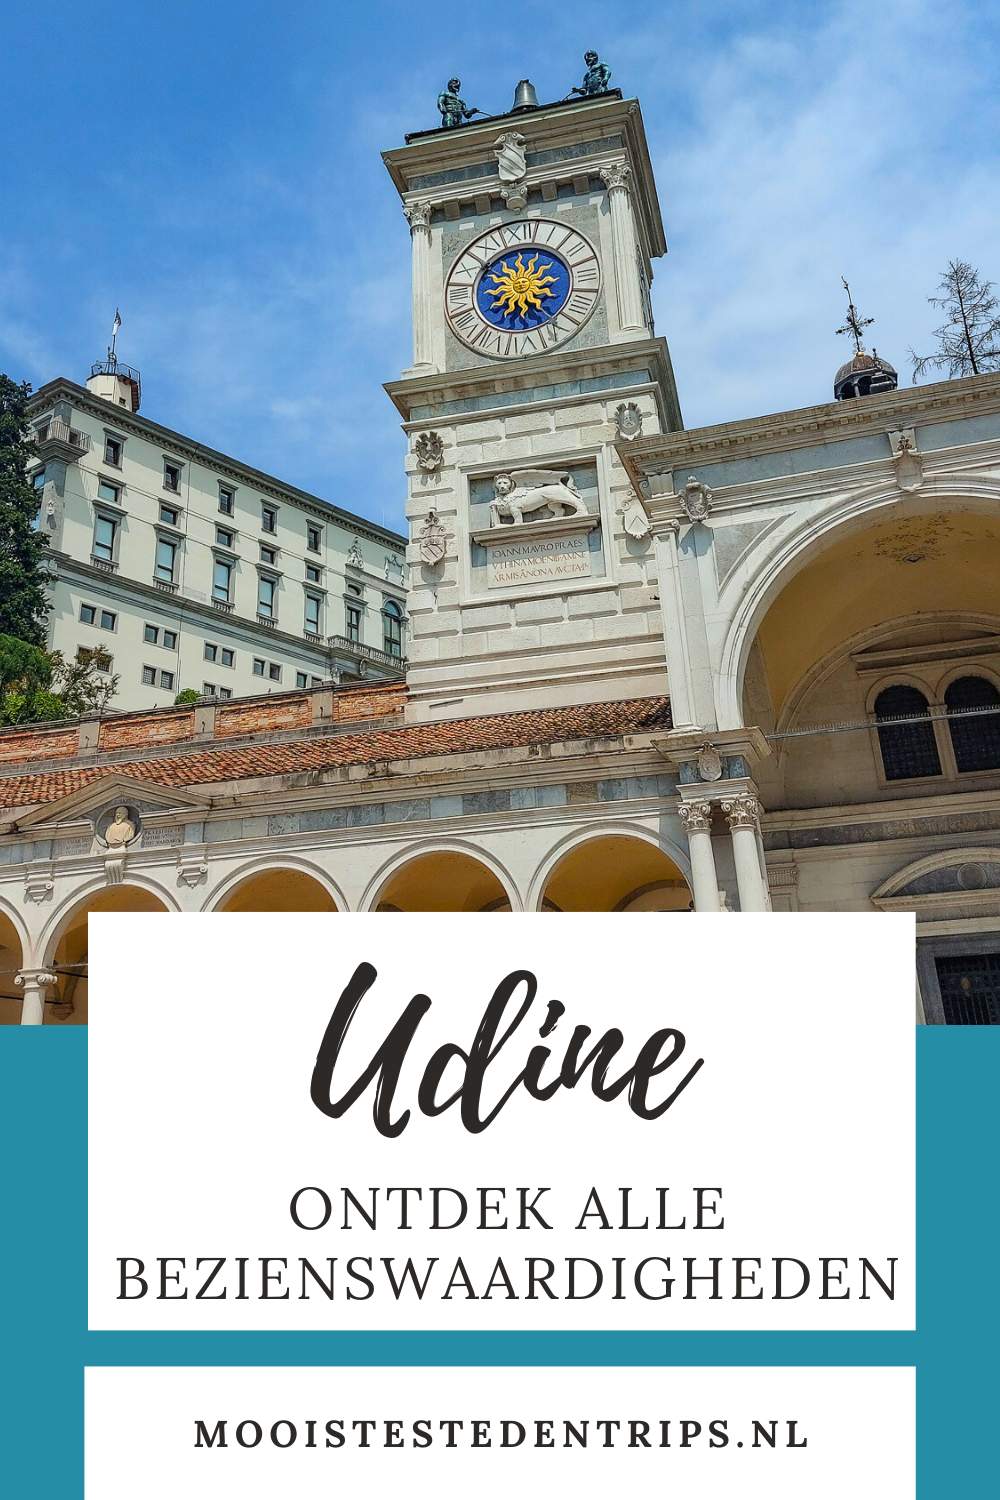 Udine, Italië: wat te doen in Udine? Bekijk de leukste bezienswaardigheden in Udine | Mooistestedentrips.nl